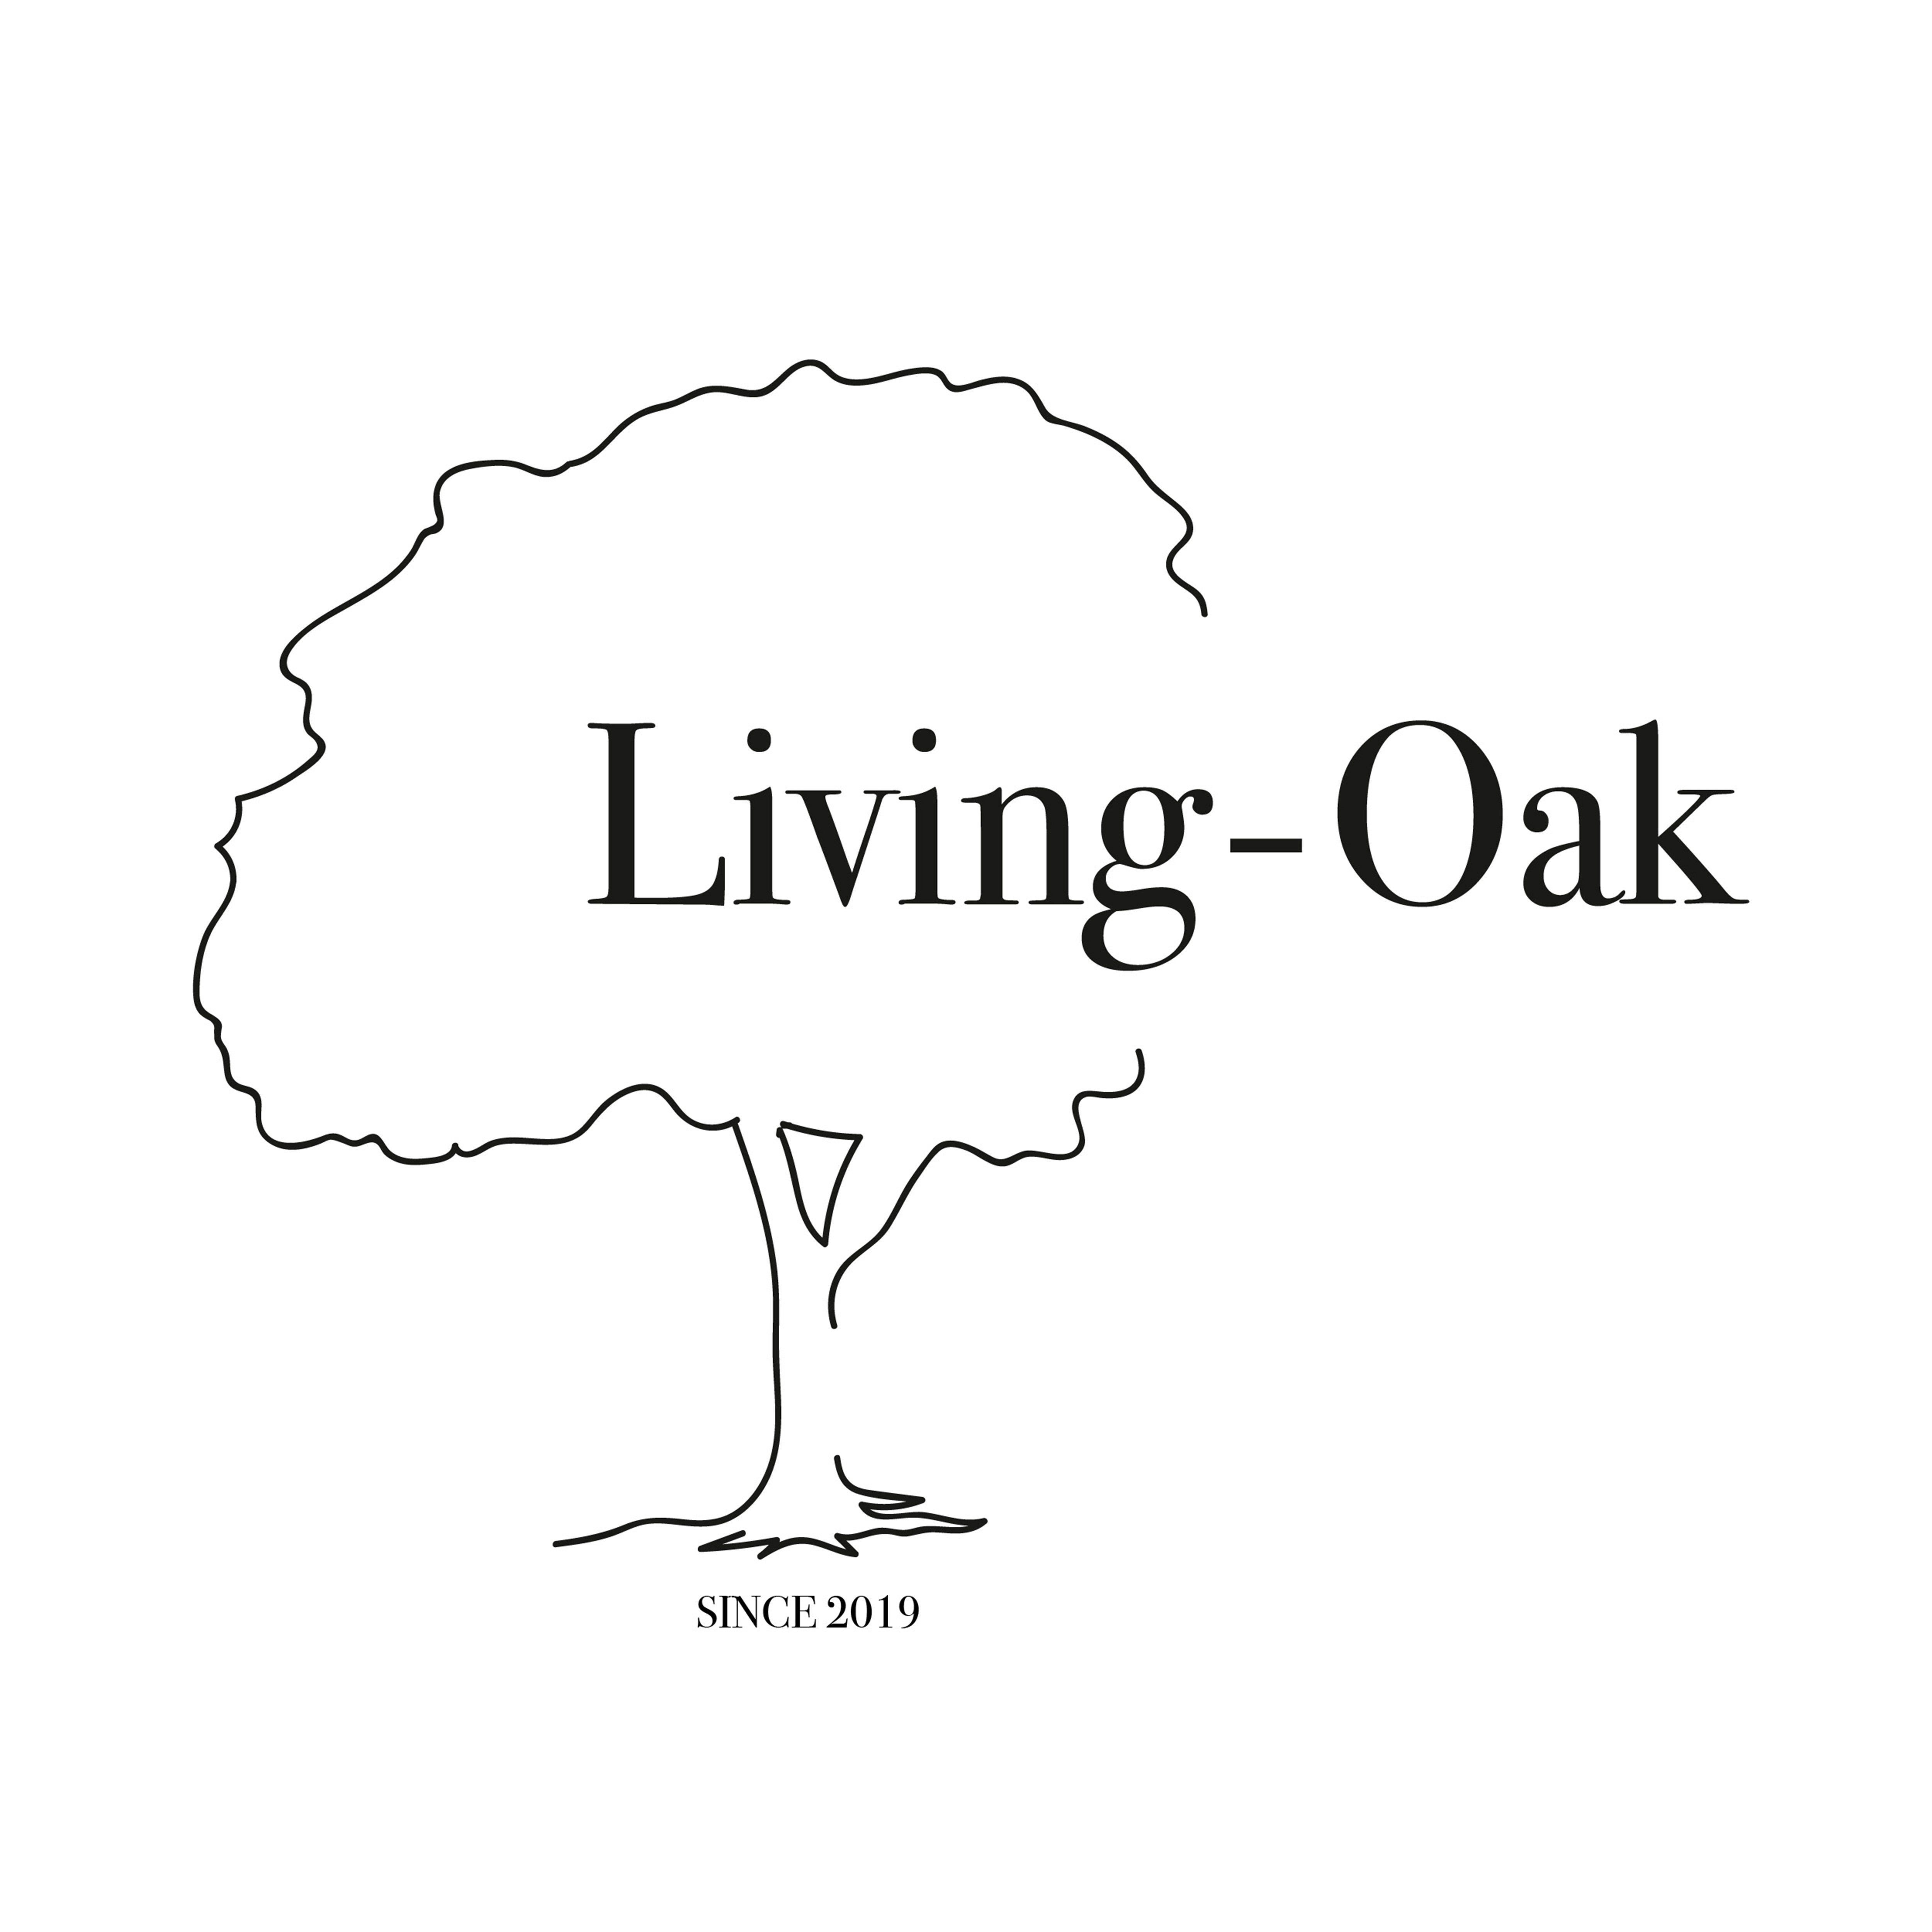 Living Oak